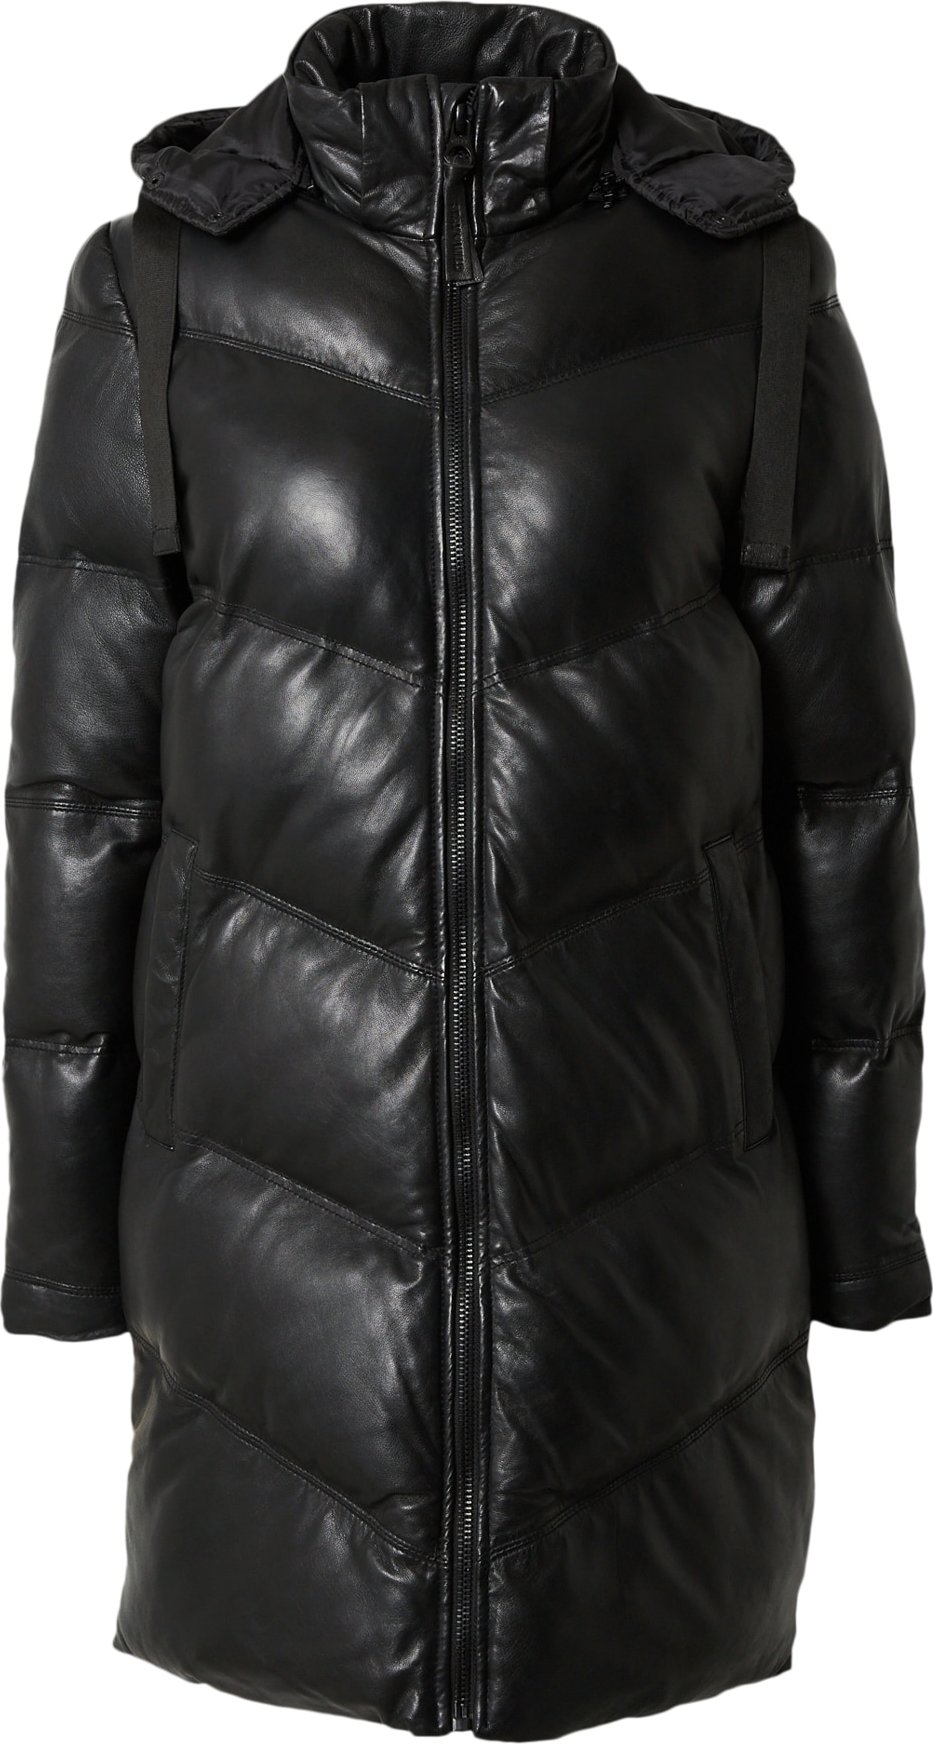 Zimní kabát 'Vallie' gipsy černá